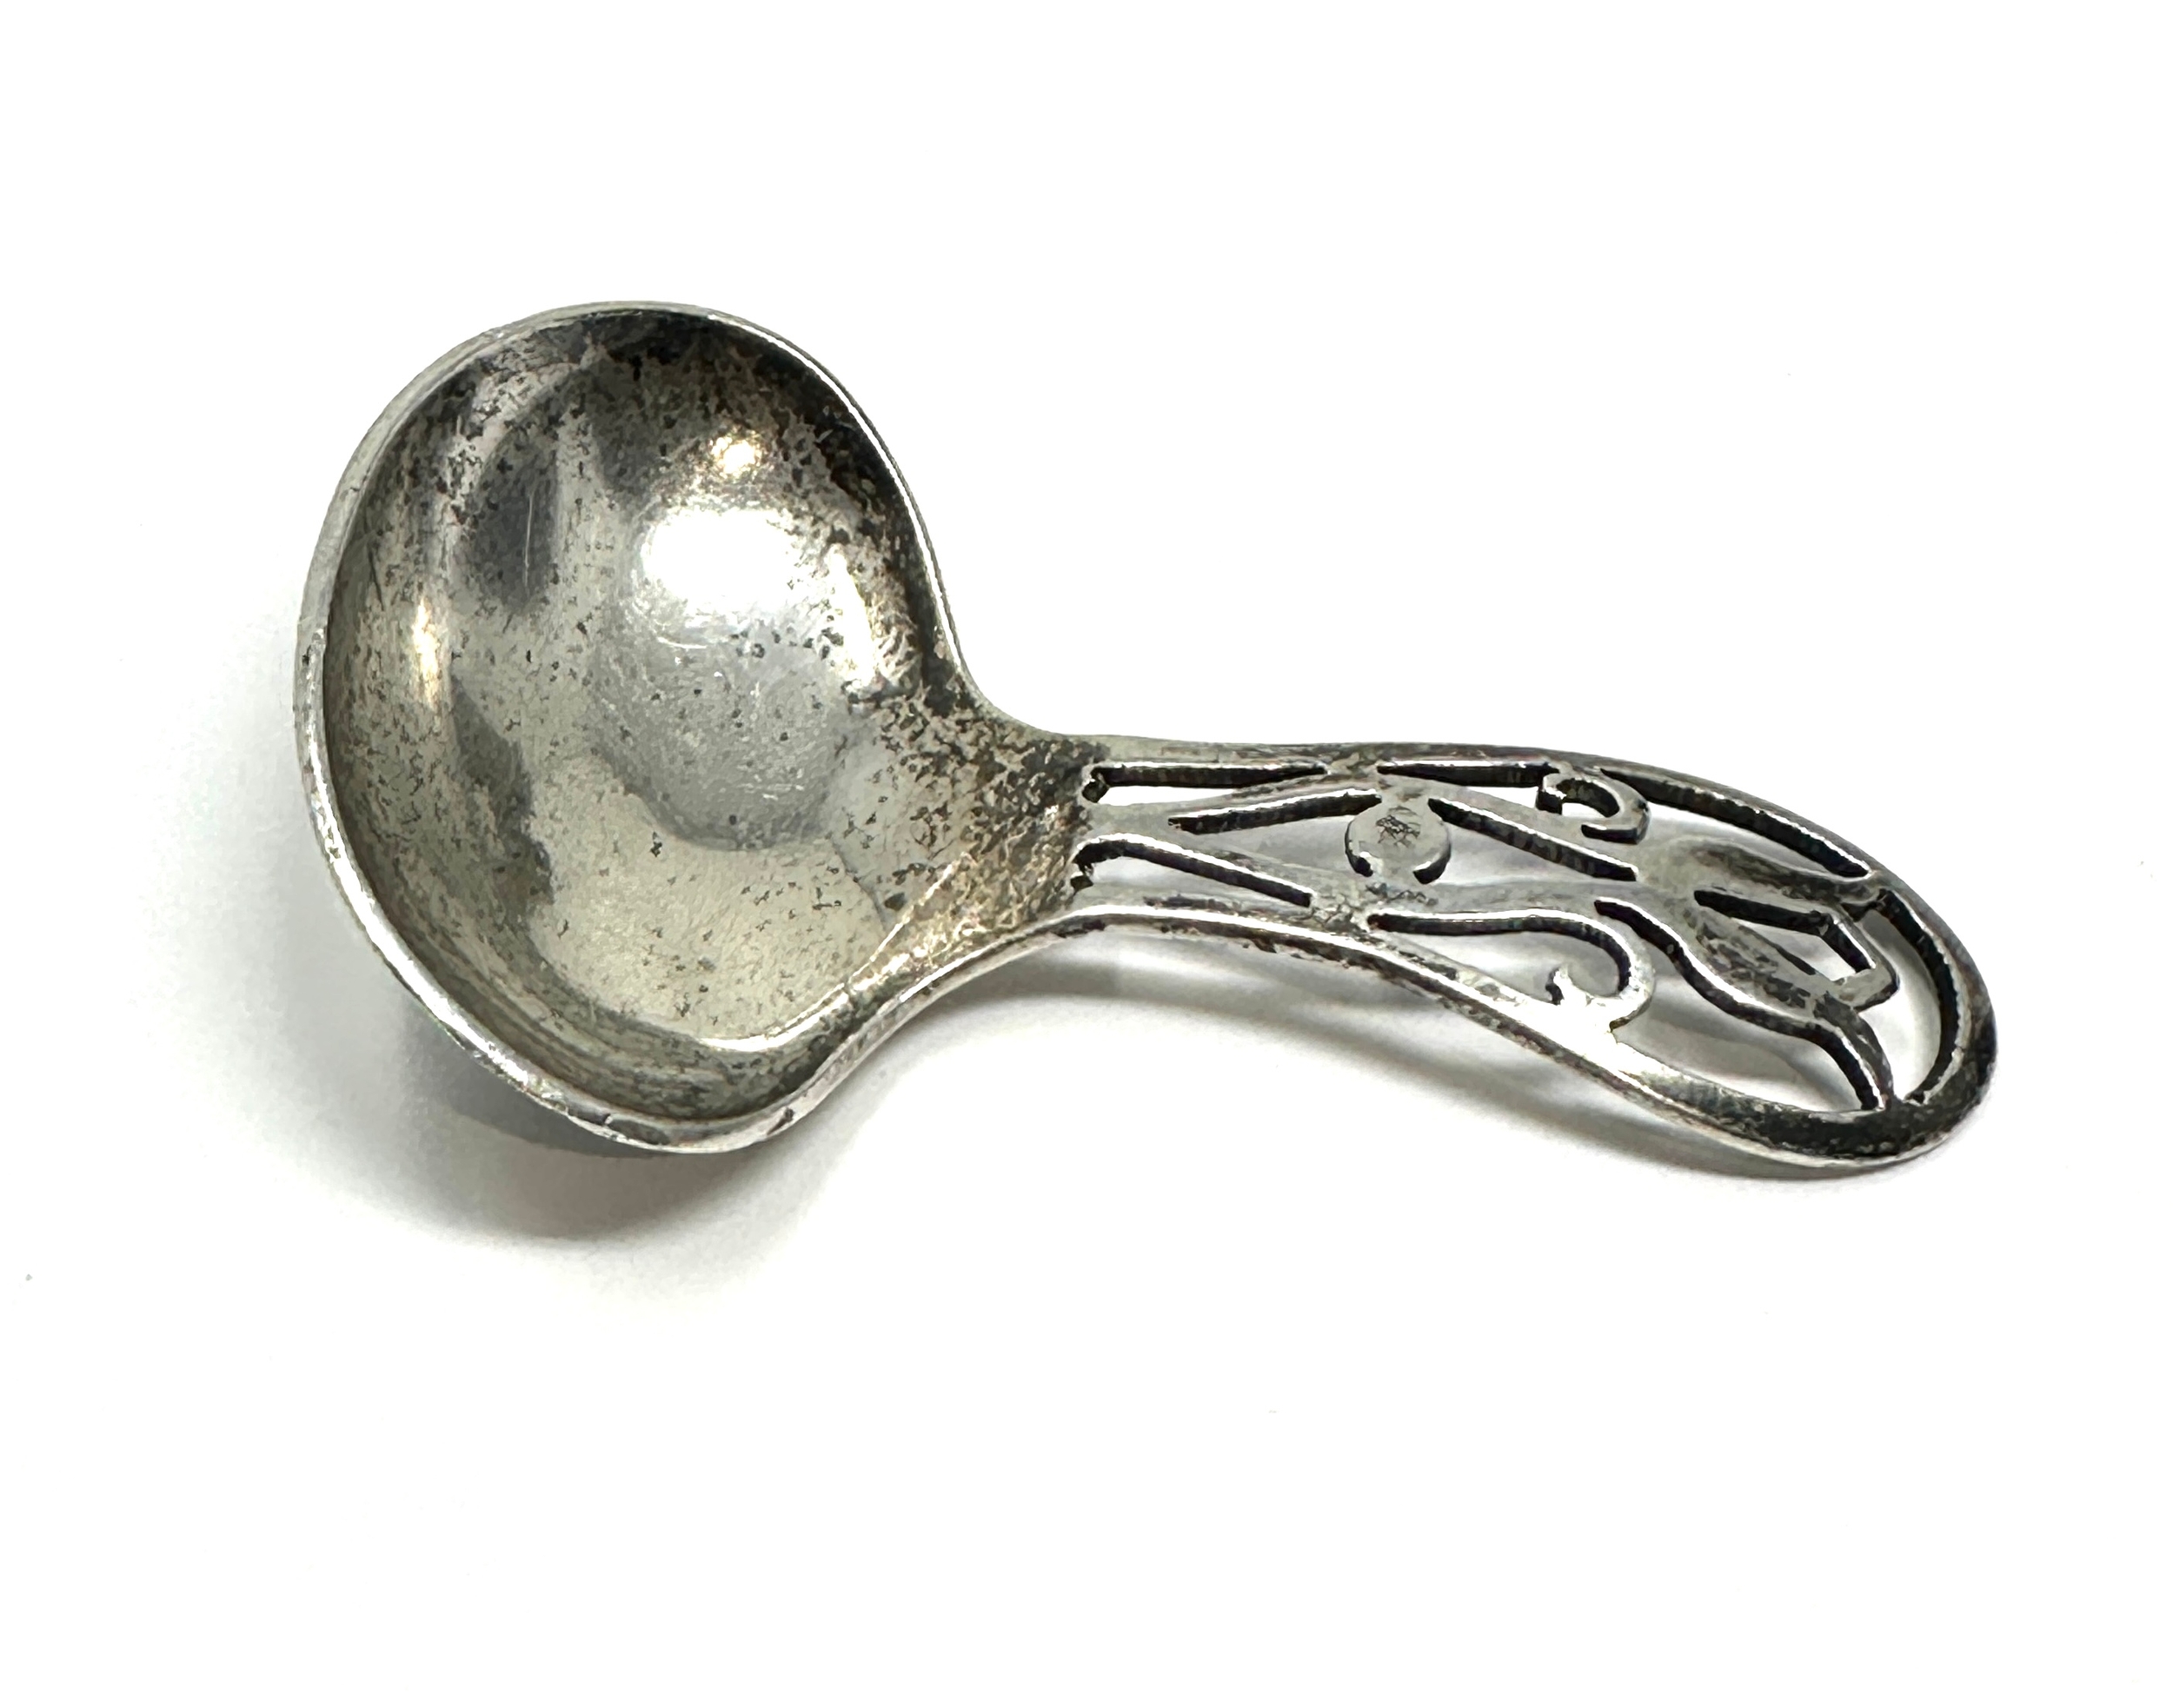 Antique silver tea caddy spoon birmingham silver hallmarks - Image 2 of 4